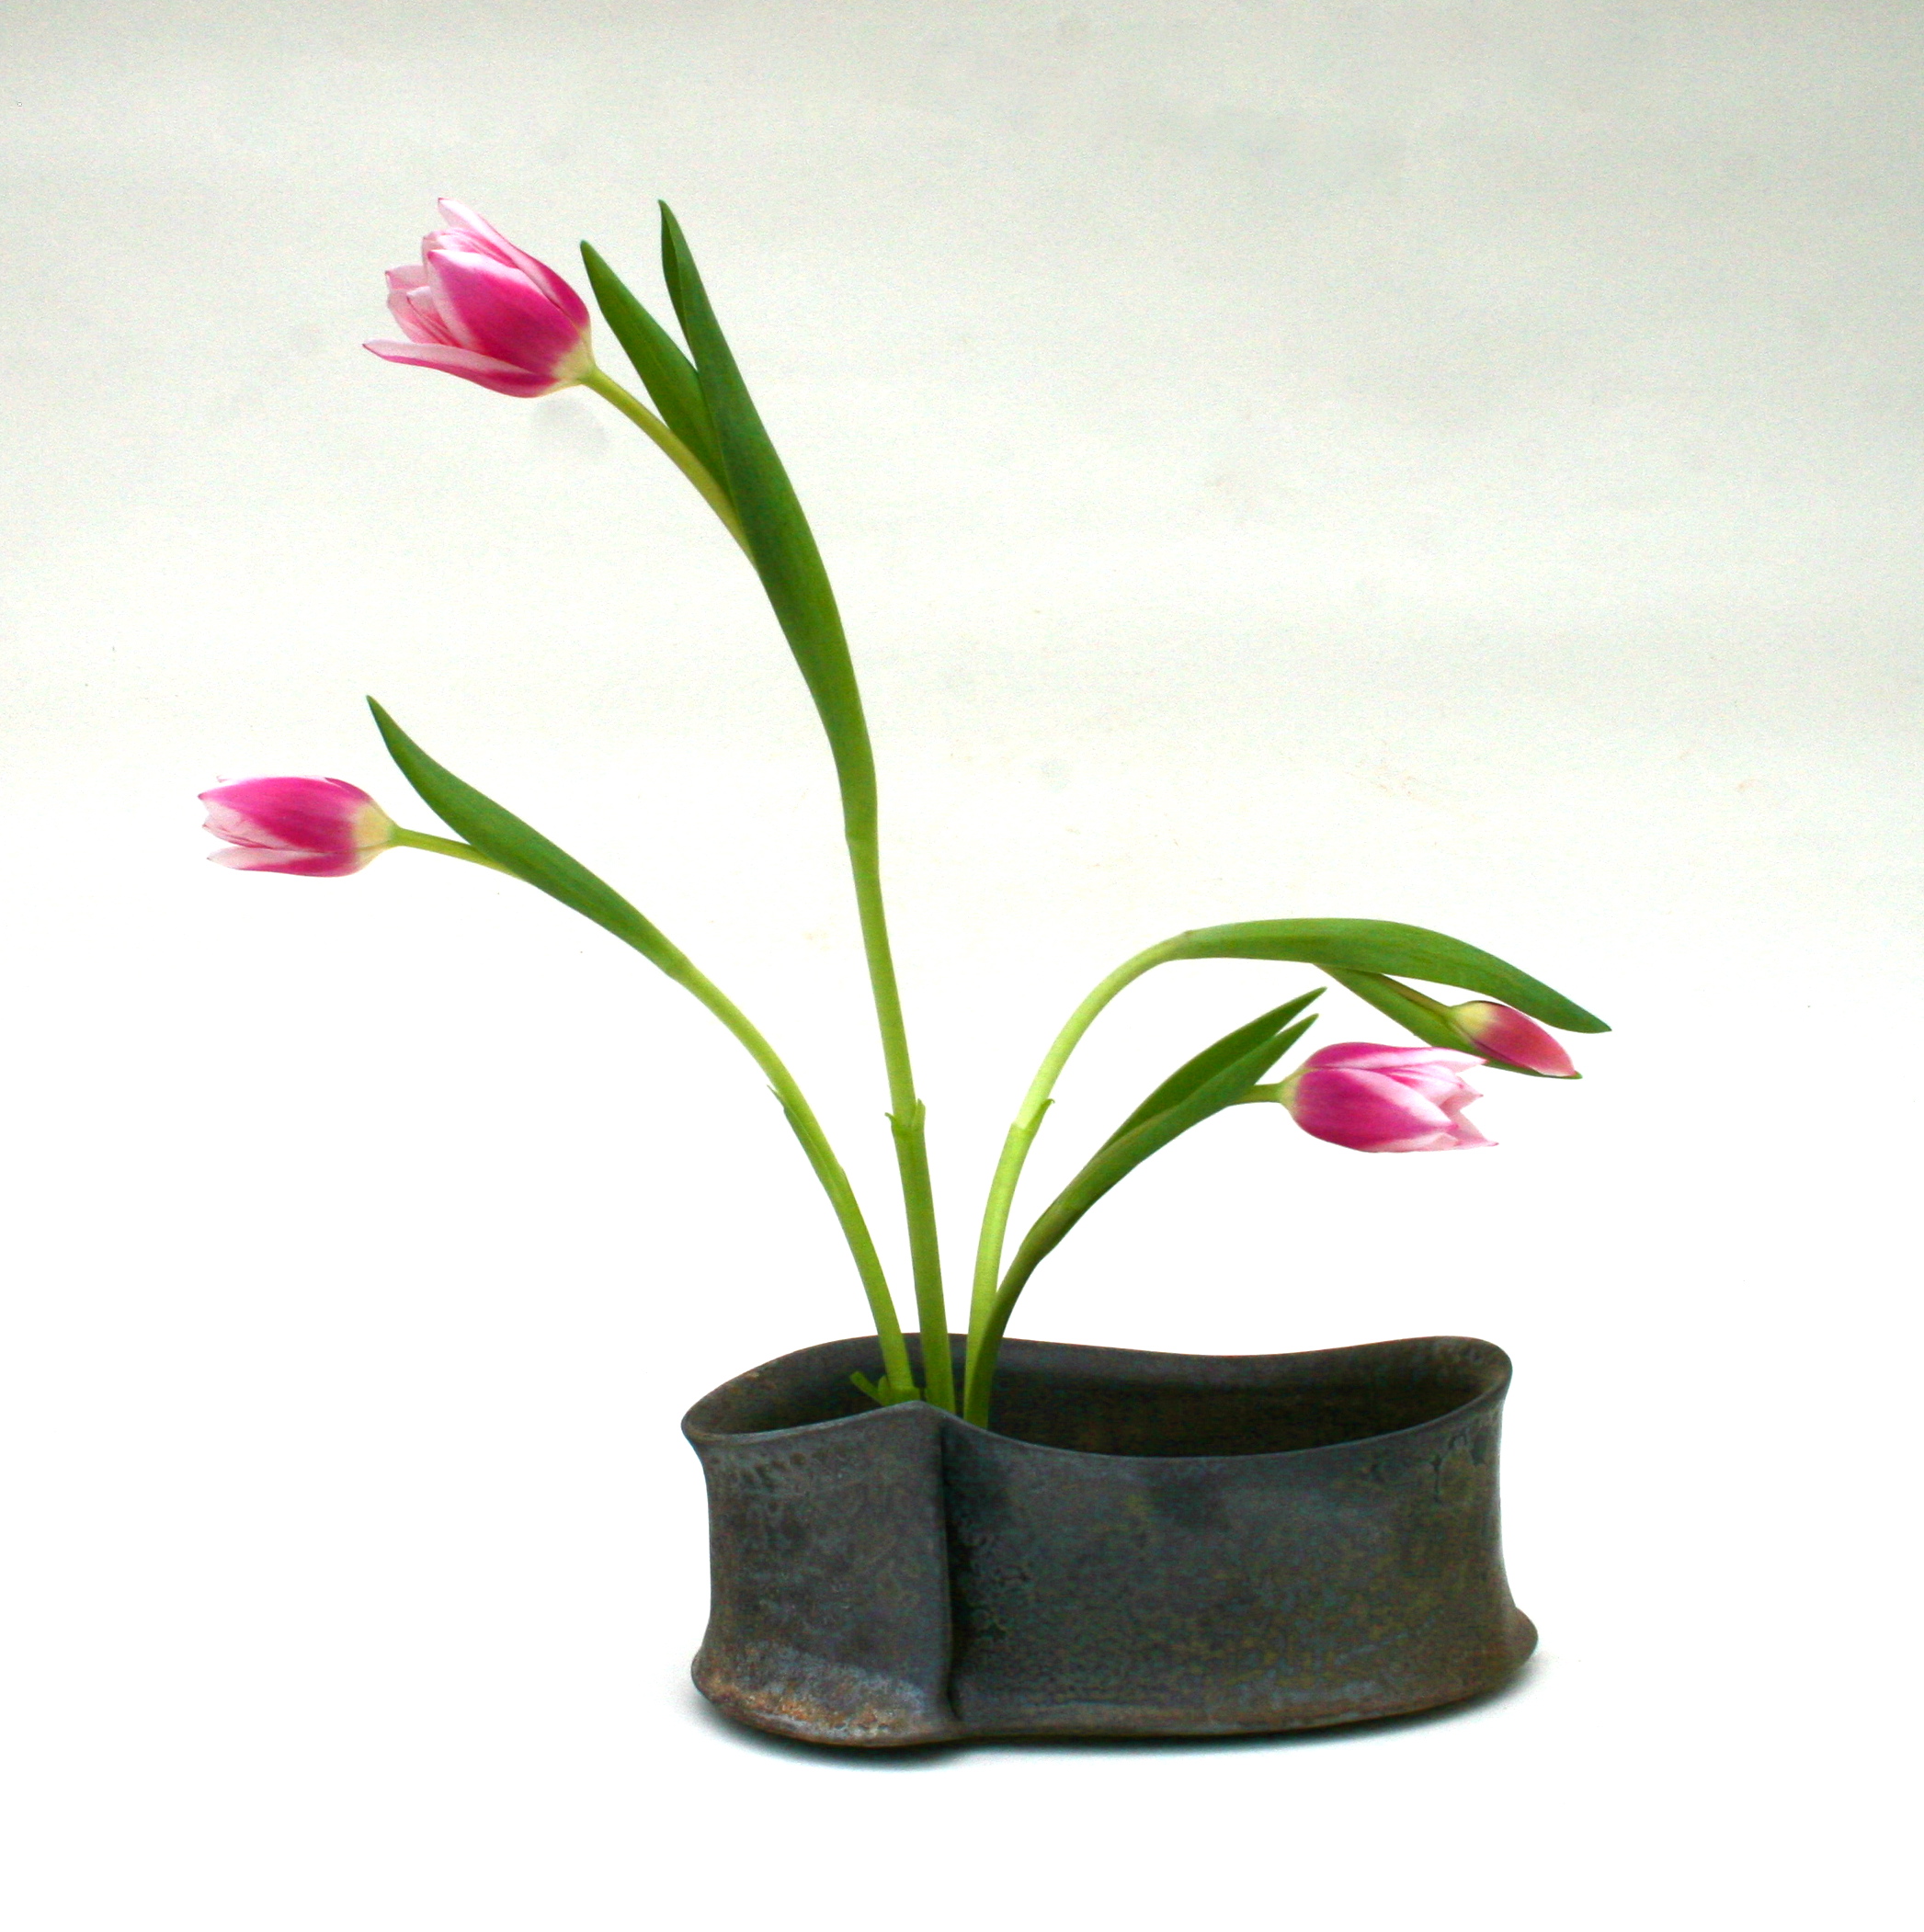 vase with tulips.JPG